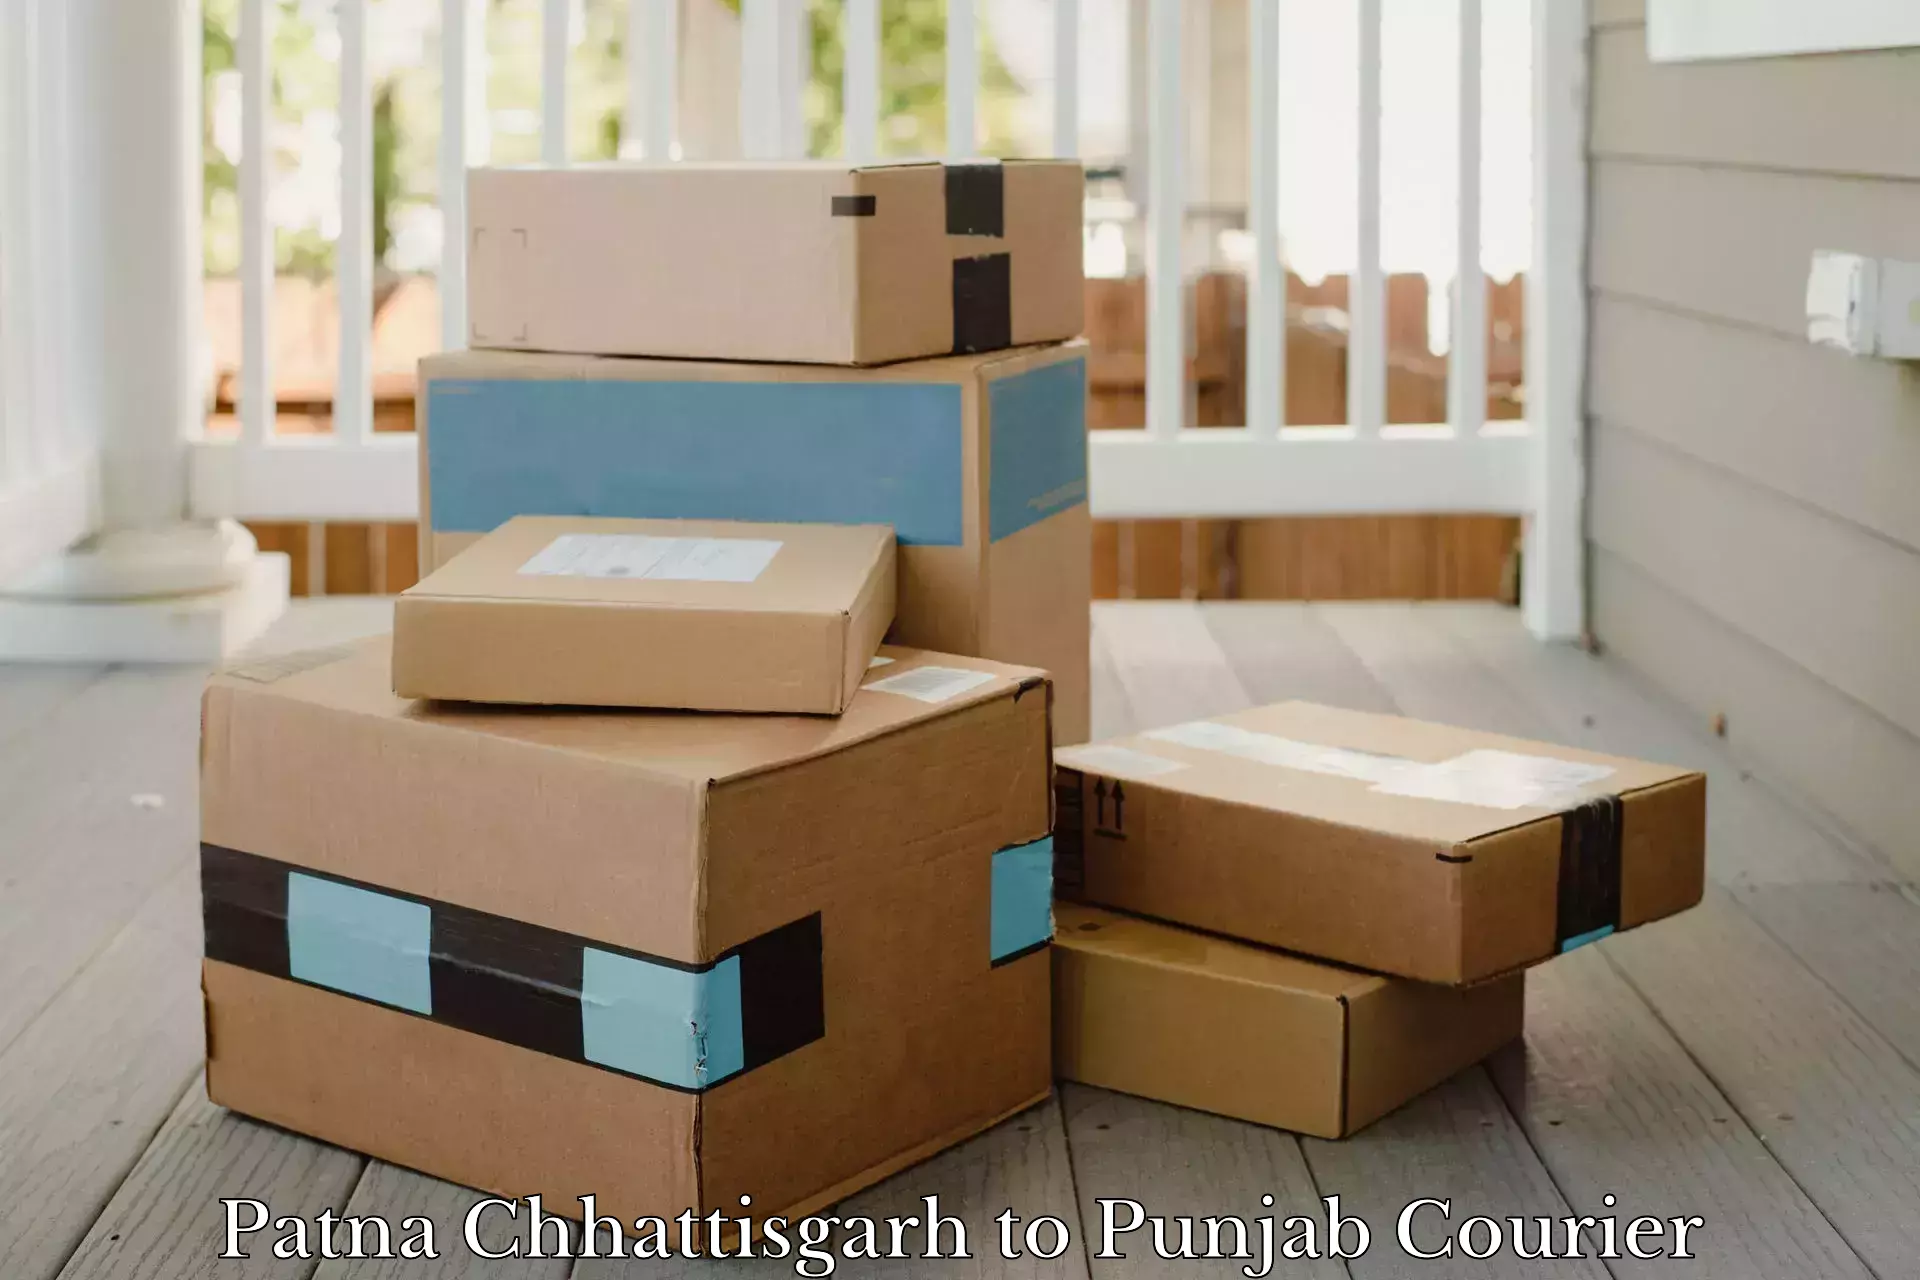 Urgent courier needs Patna Chhattisgarh to Mandi Gobindgarh